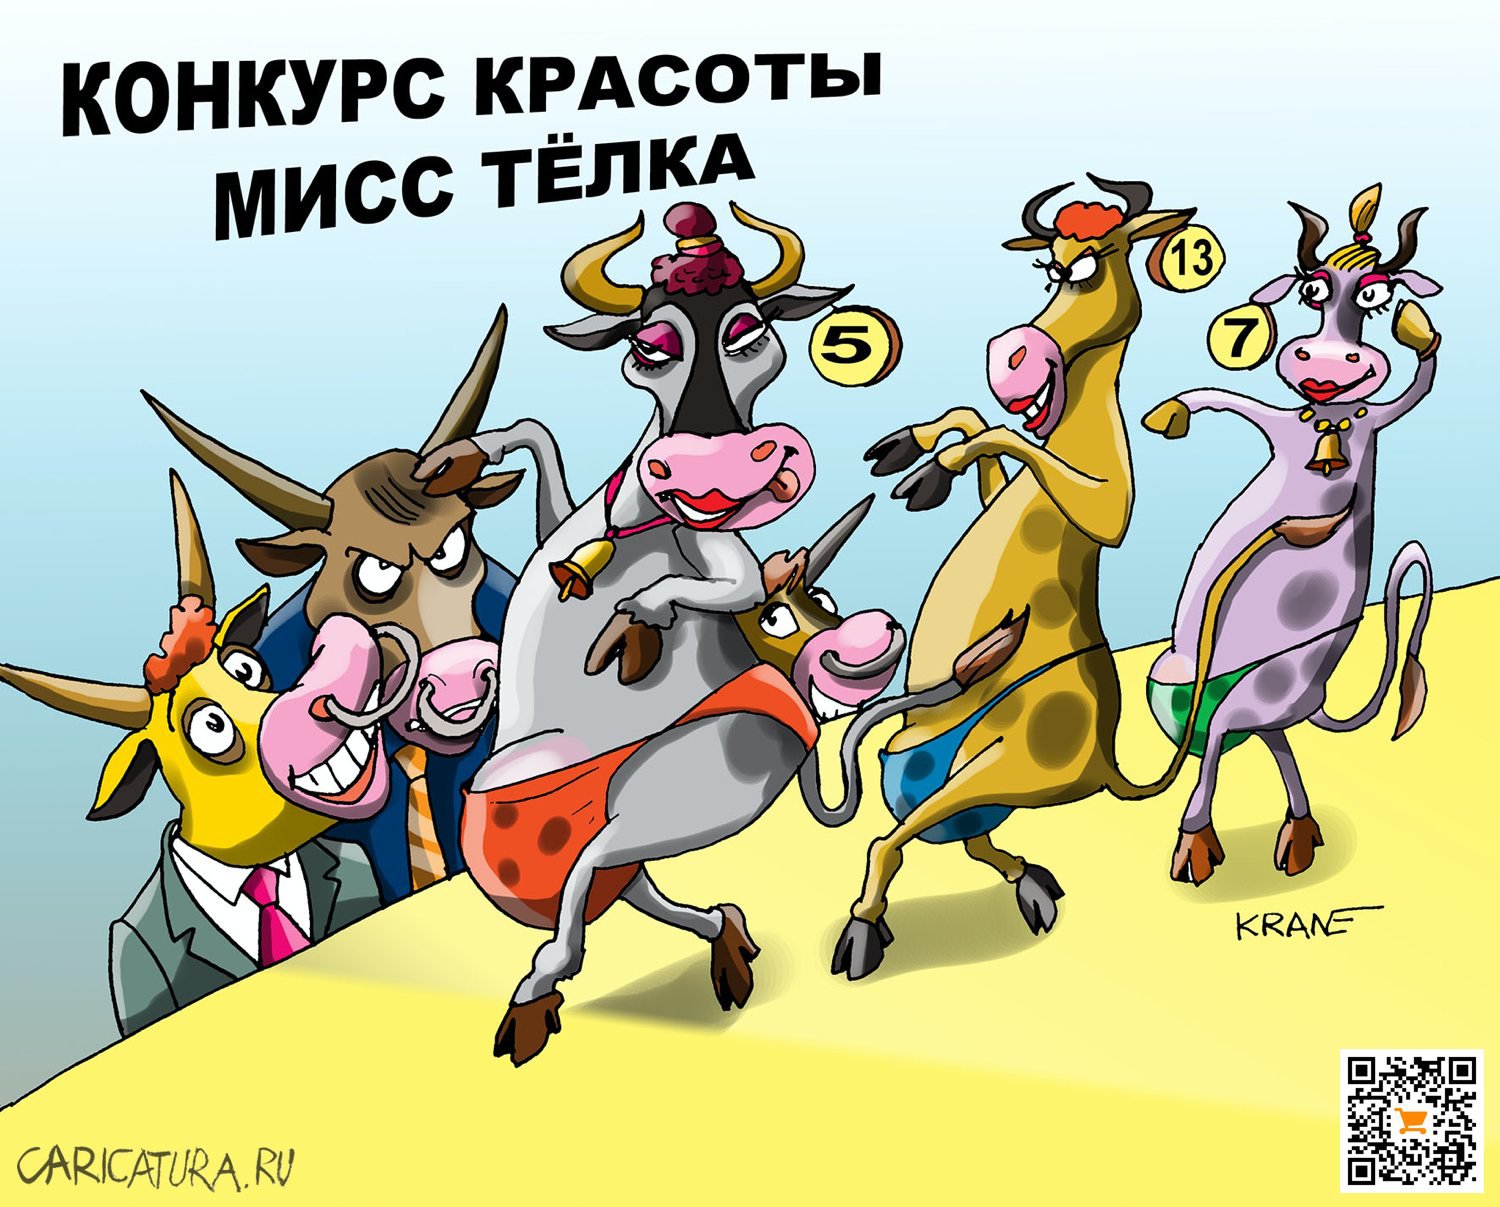 Карикатура "И дали борща!", Евгений Кран